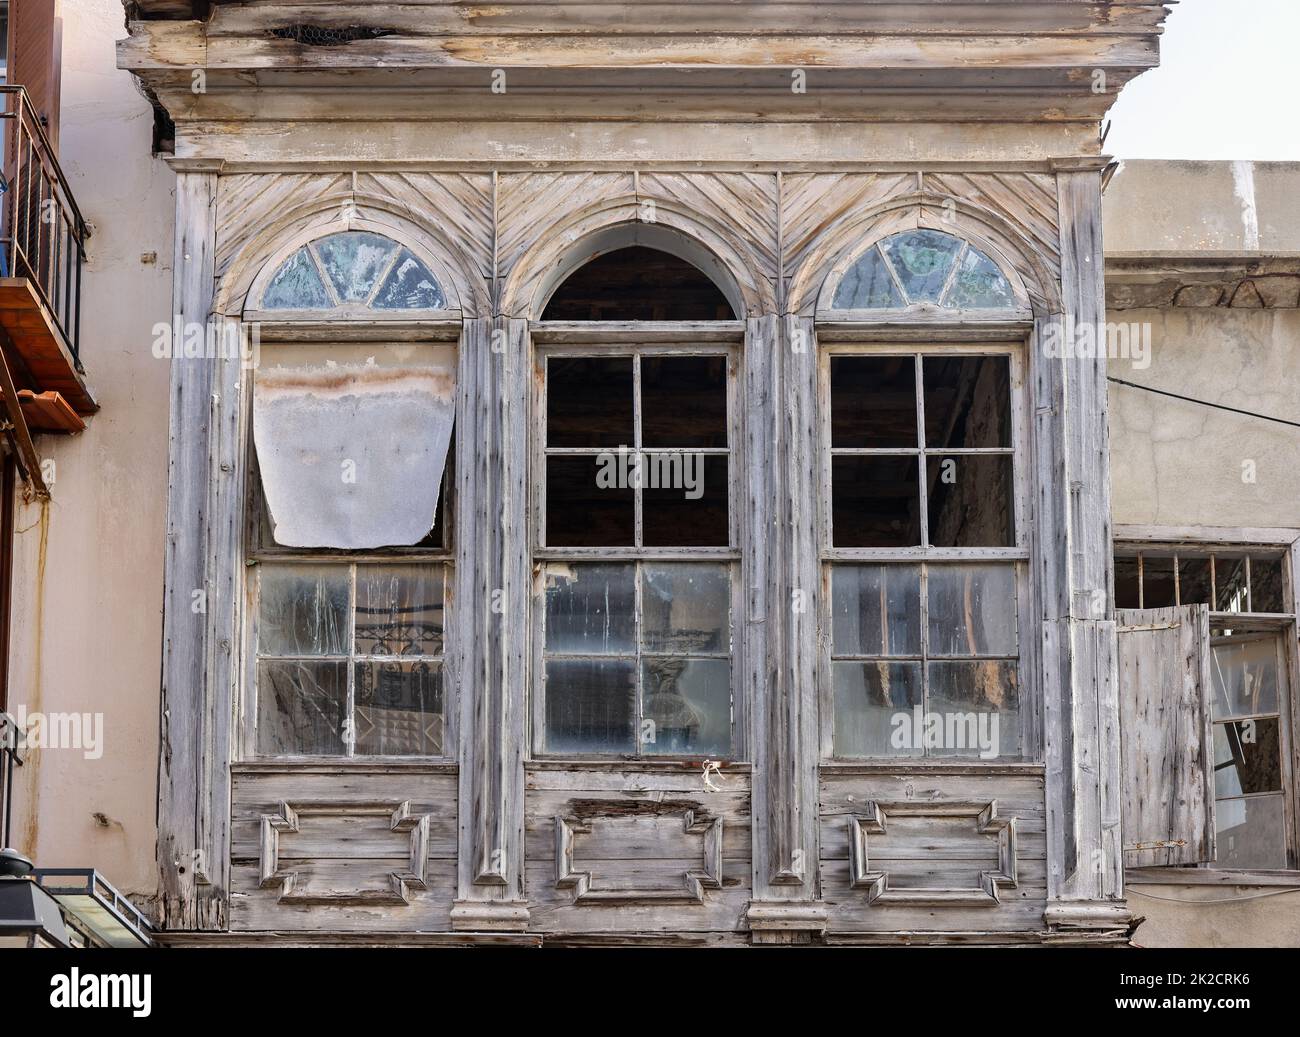 Maisons anciennes dans la vieille ville de Réthymnon, île de Crète.Grèce. Banque D'Images